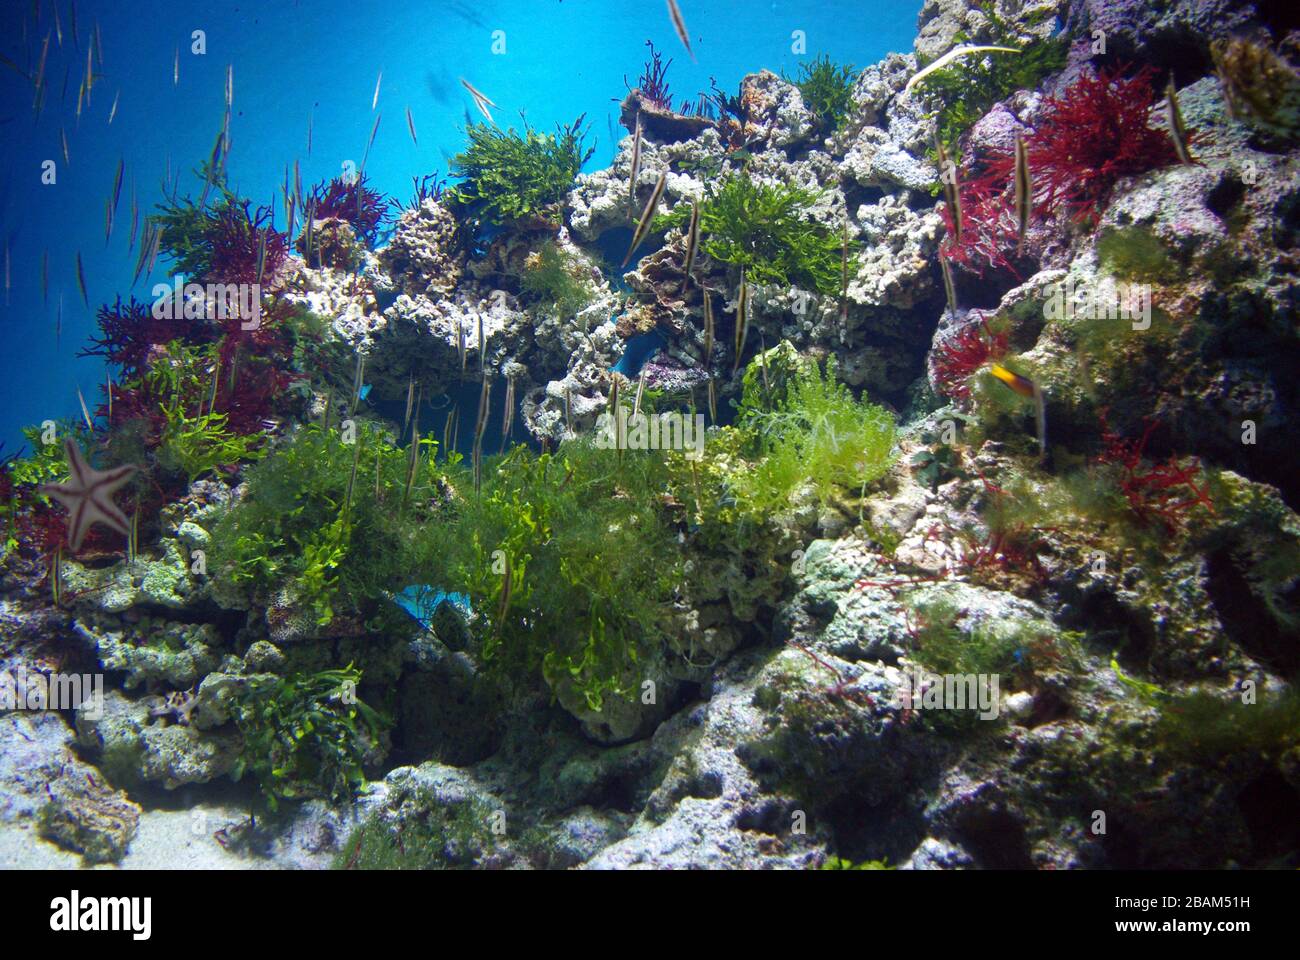 Tropical marine aquarium with algae and Razorfishes (Aeoliscus strigatus) Stock Photo